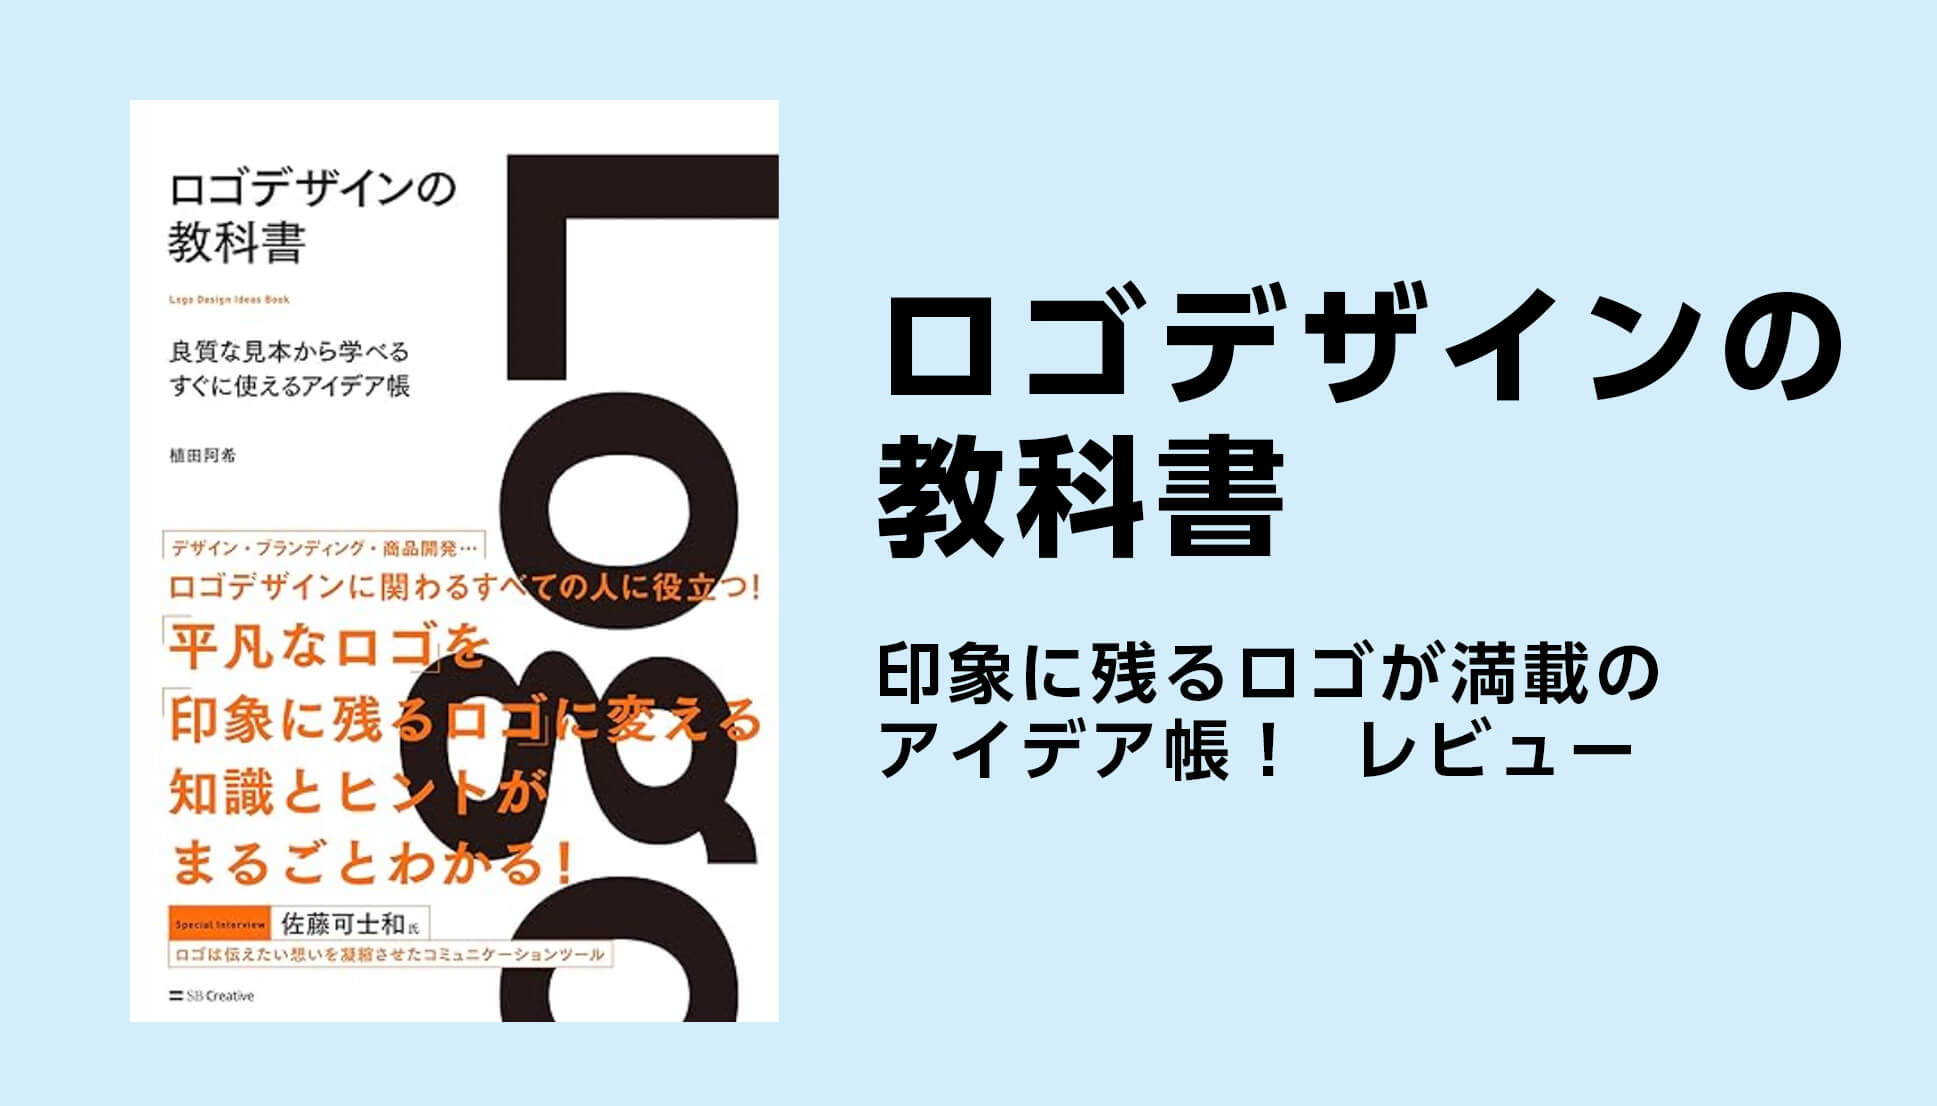 植田阿希さんのデザイン参考書「ロゴデザインの教科書　良質な見本から学べるすぐに使えるアイデア帳」の感想記事です。